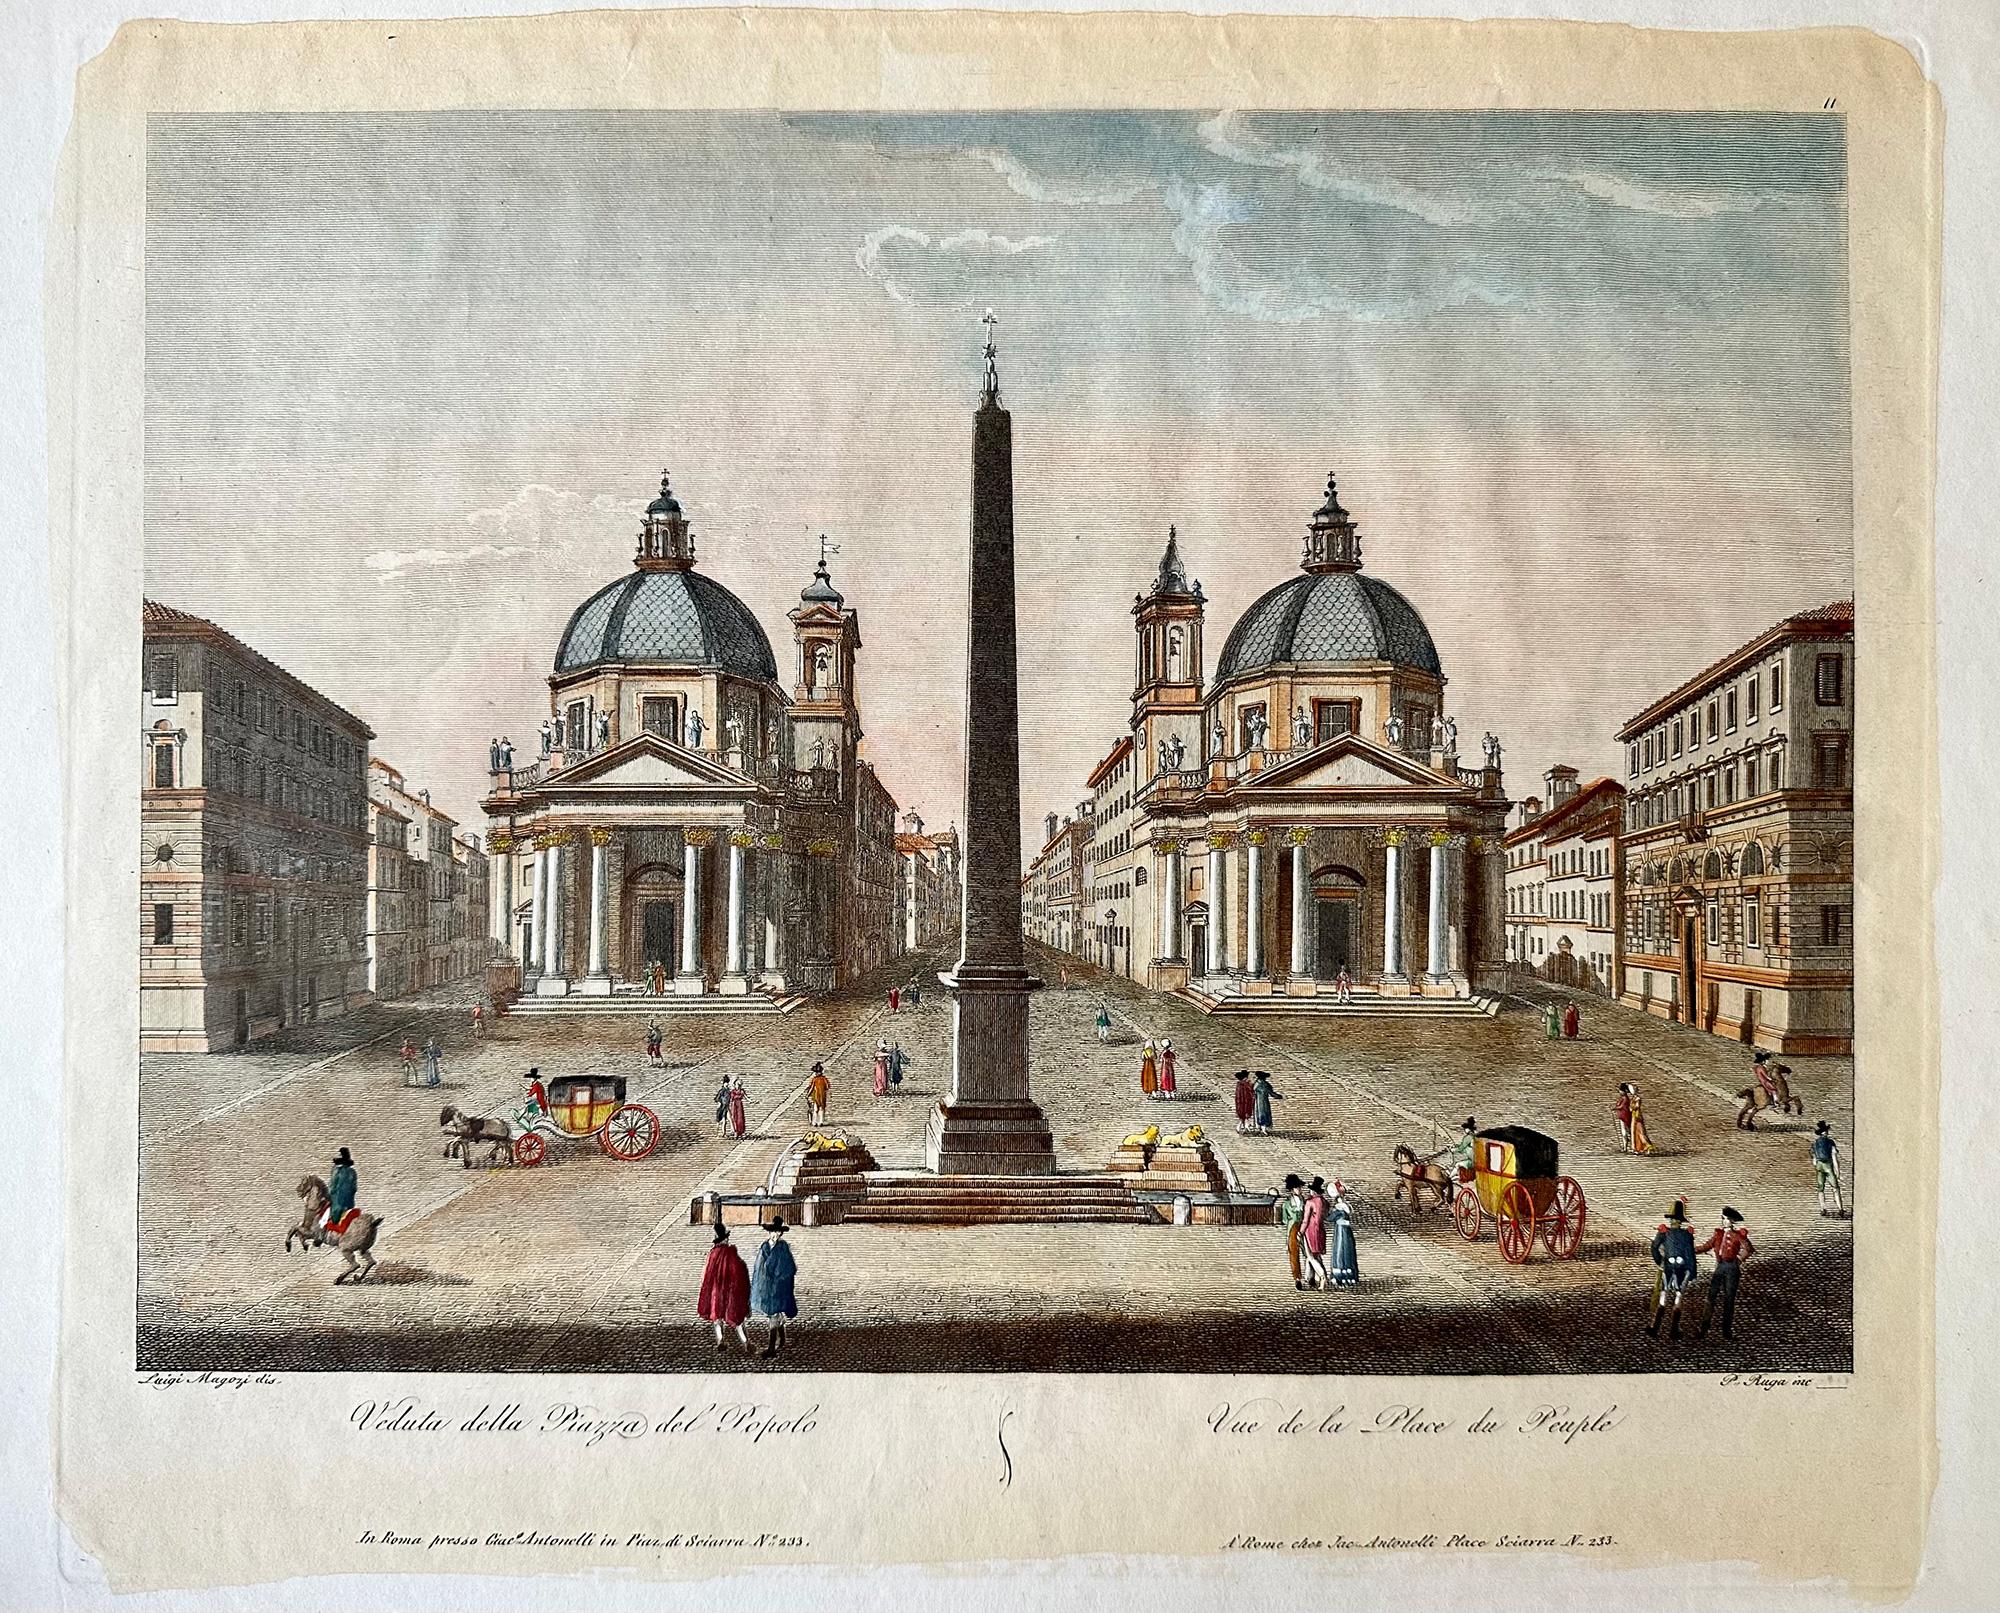 Veduta della Piazza del Popolo - Print by Pietro Ruga